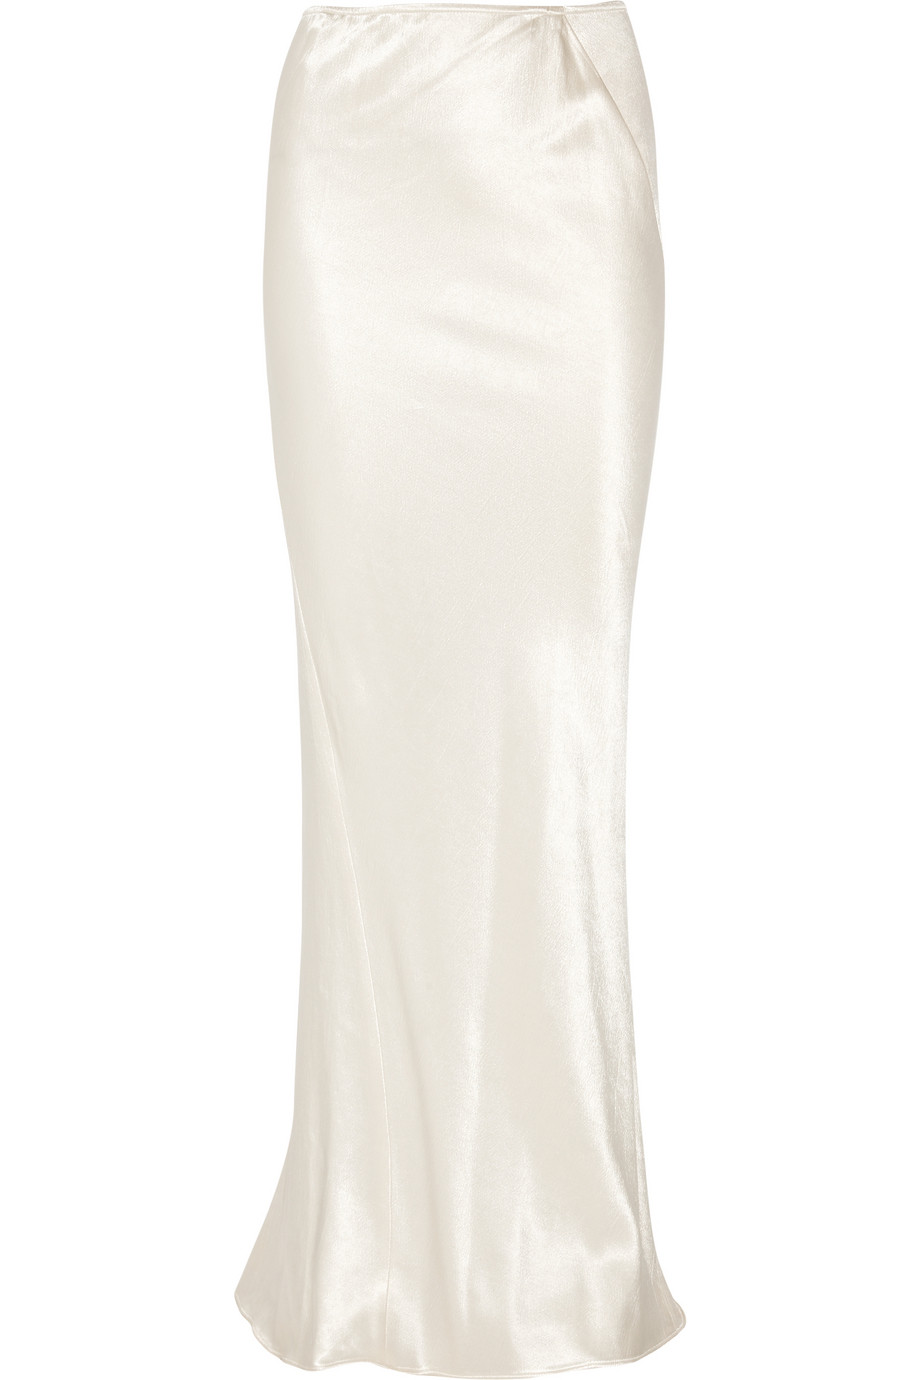 Donna Karan Hammered Stretch-satin Maxi Skirt in White | Lyst